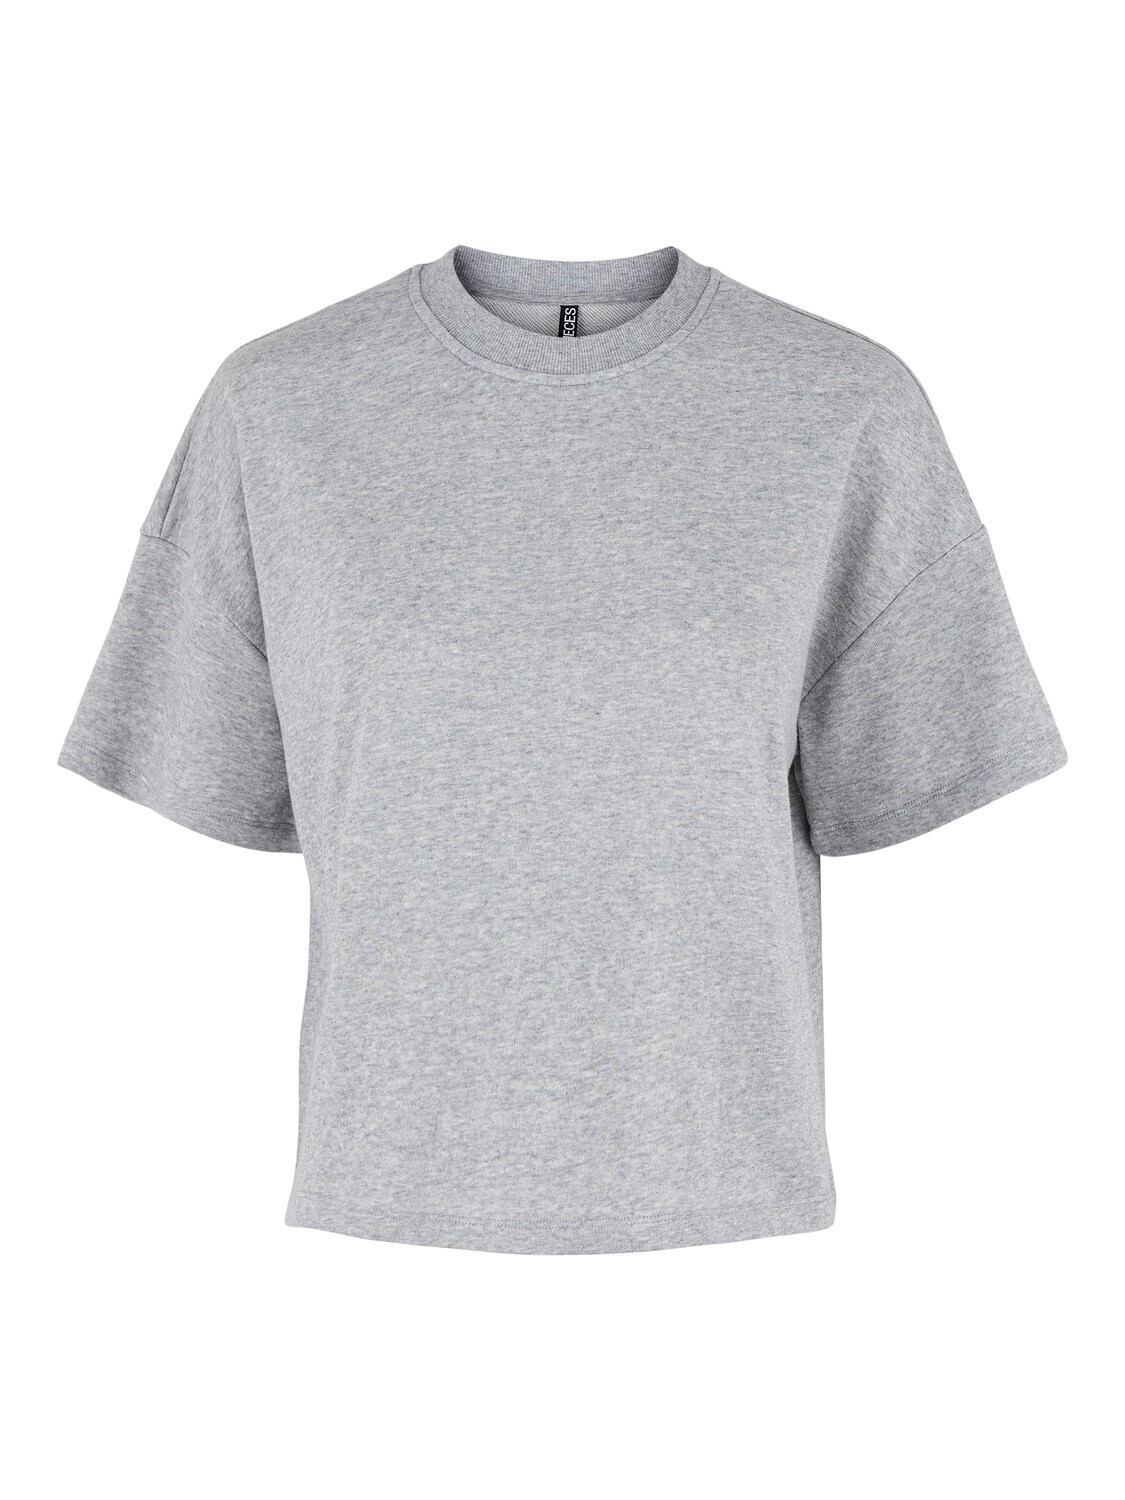 T-shirt sweat - CHILLI - mélange grijs